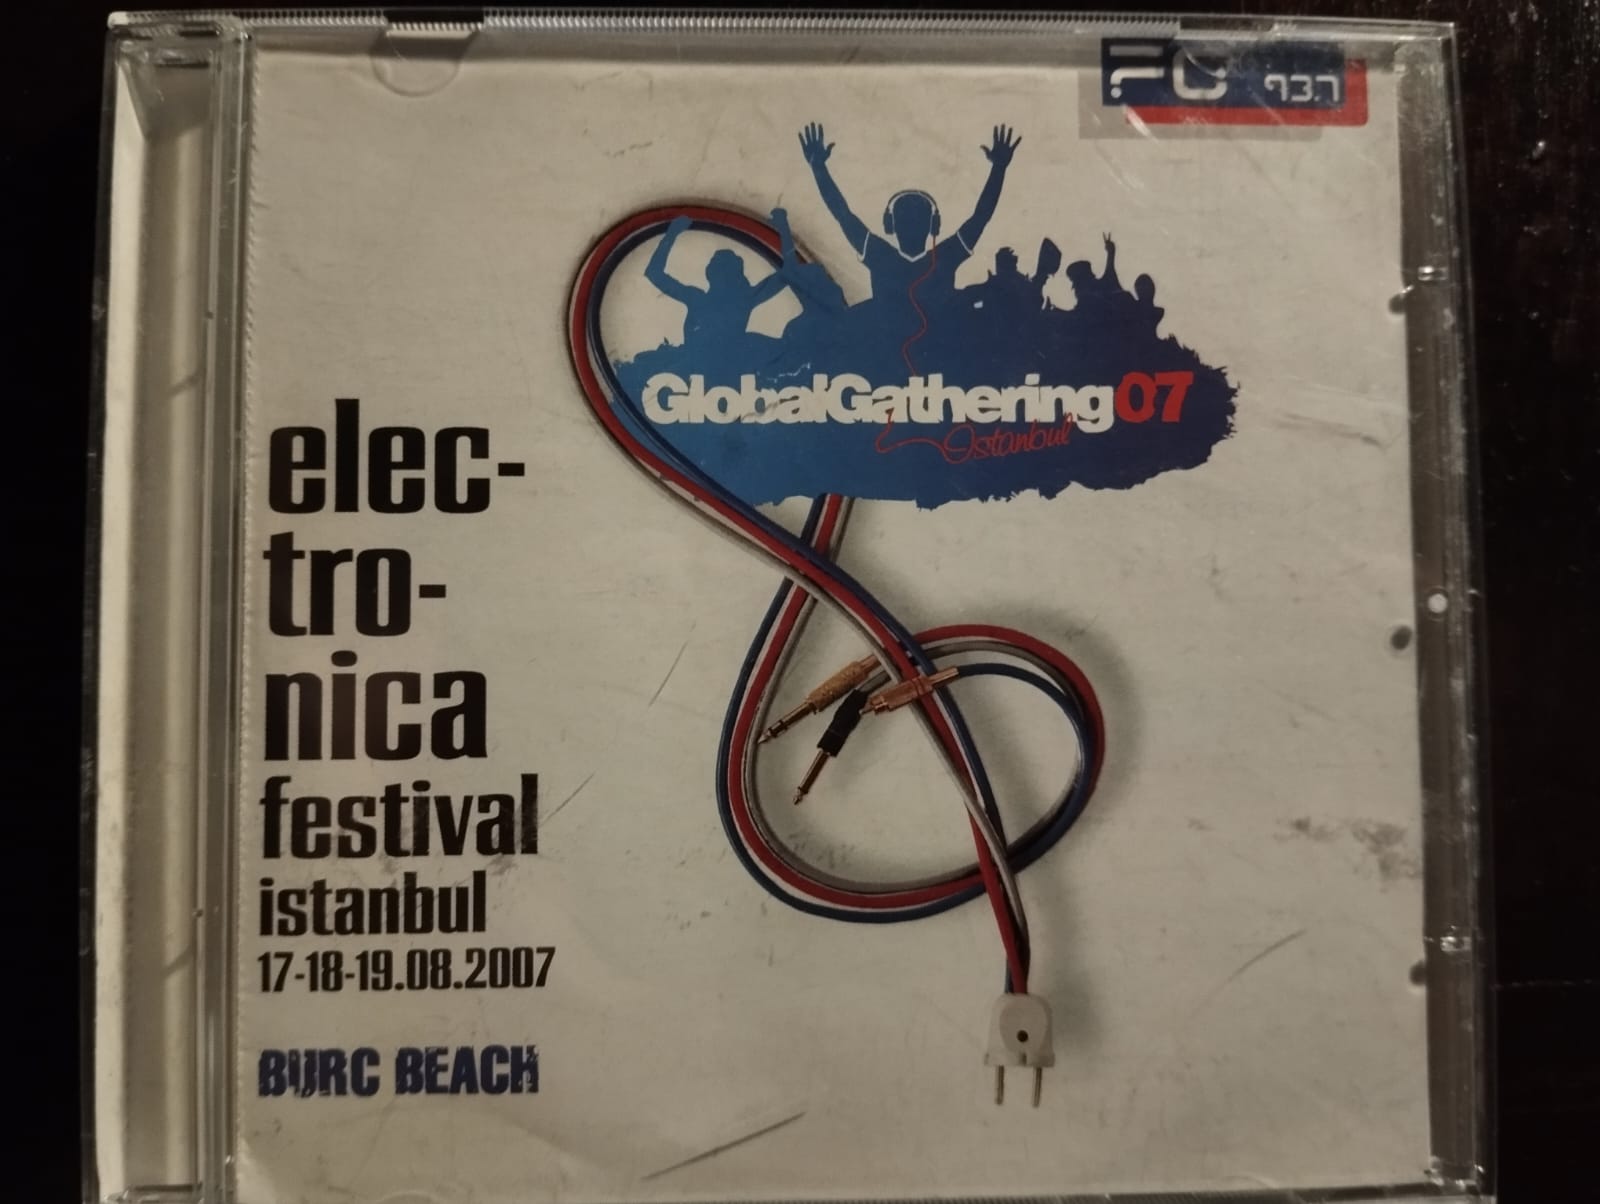 Elec-tronica festival İstanbul 2007 - Türkiye Basım 2. El CD Albüm